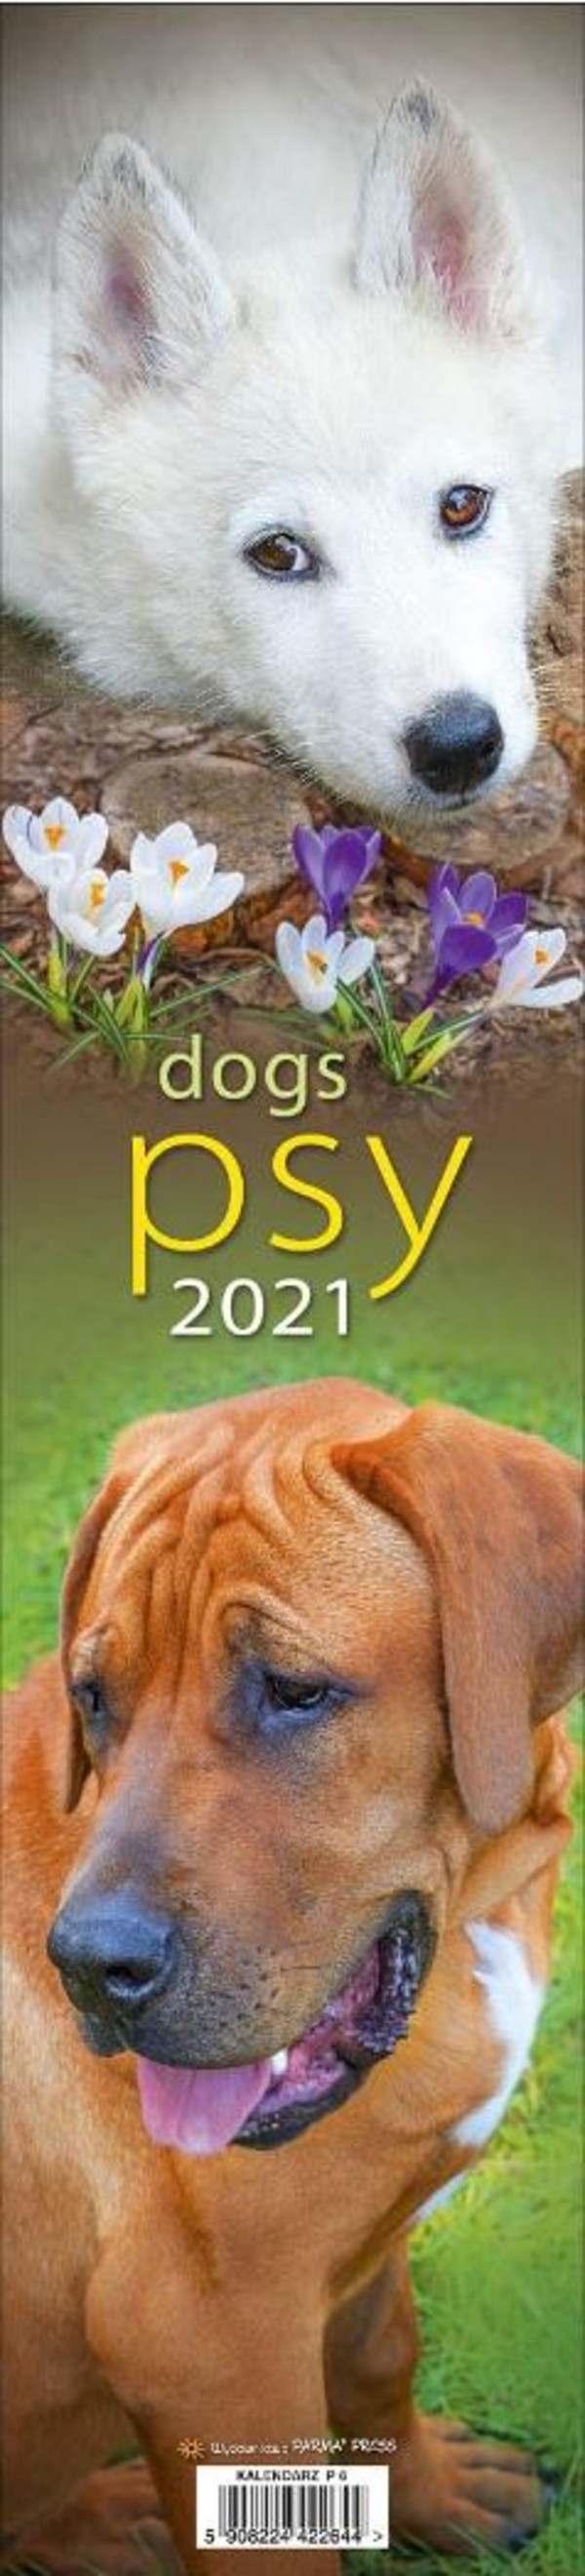 Kalendarz 2021 paskowy Psy